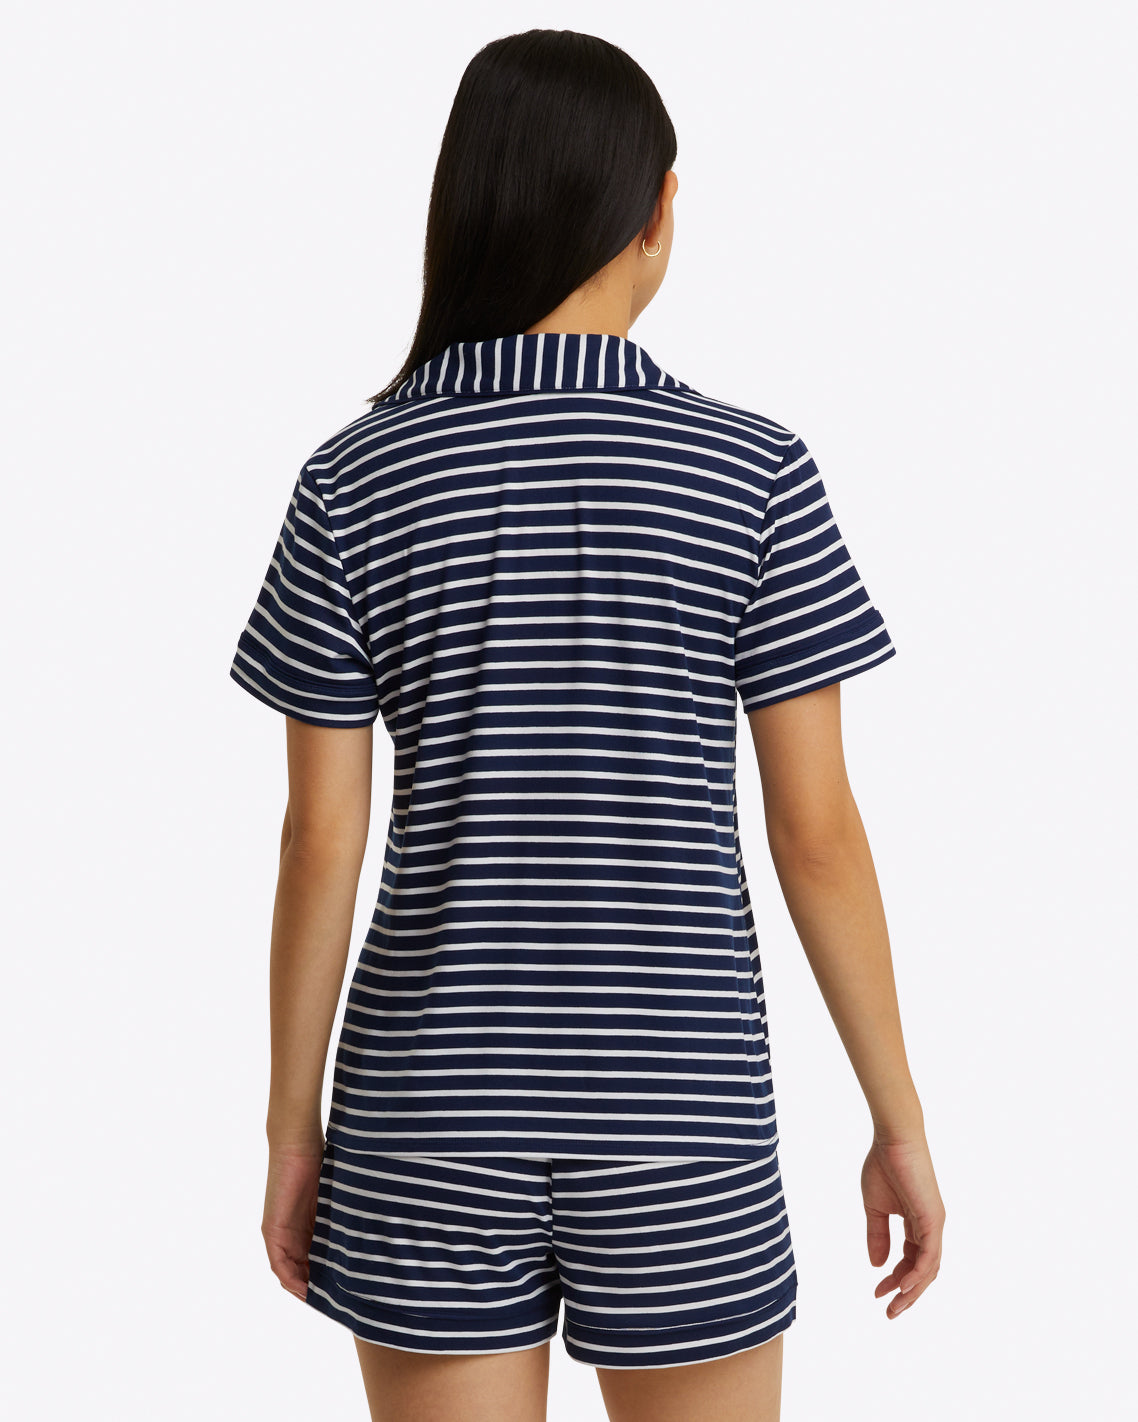 Sara Pajama Set - Nautical Stripe